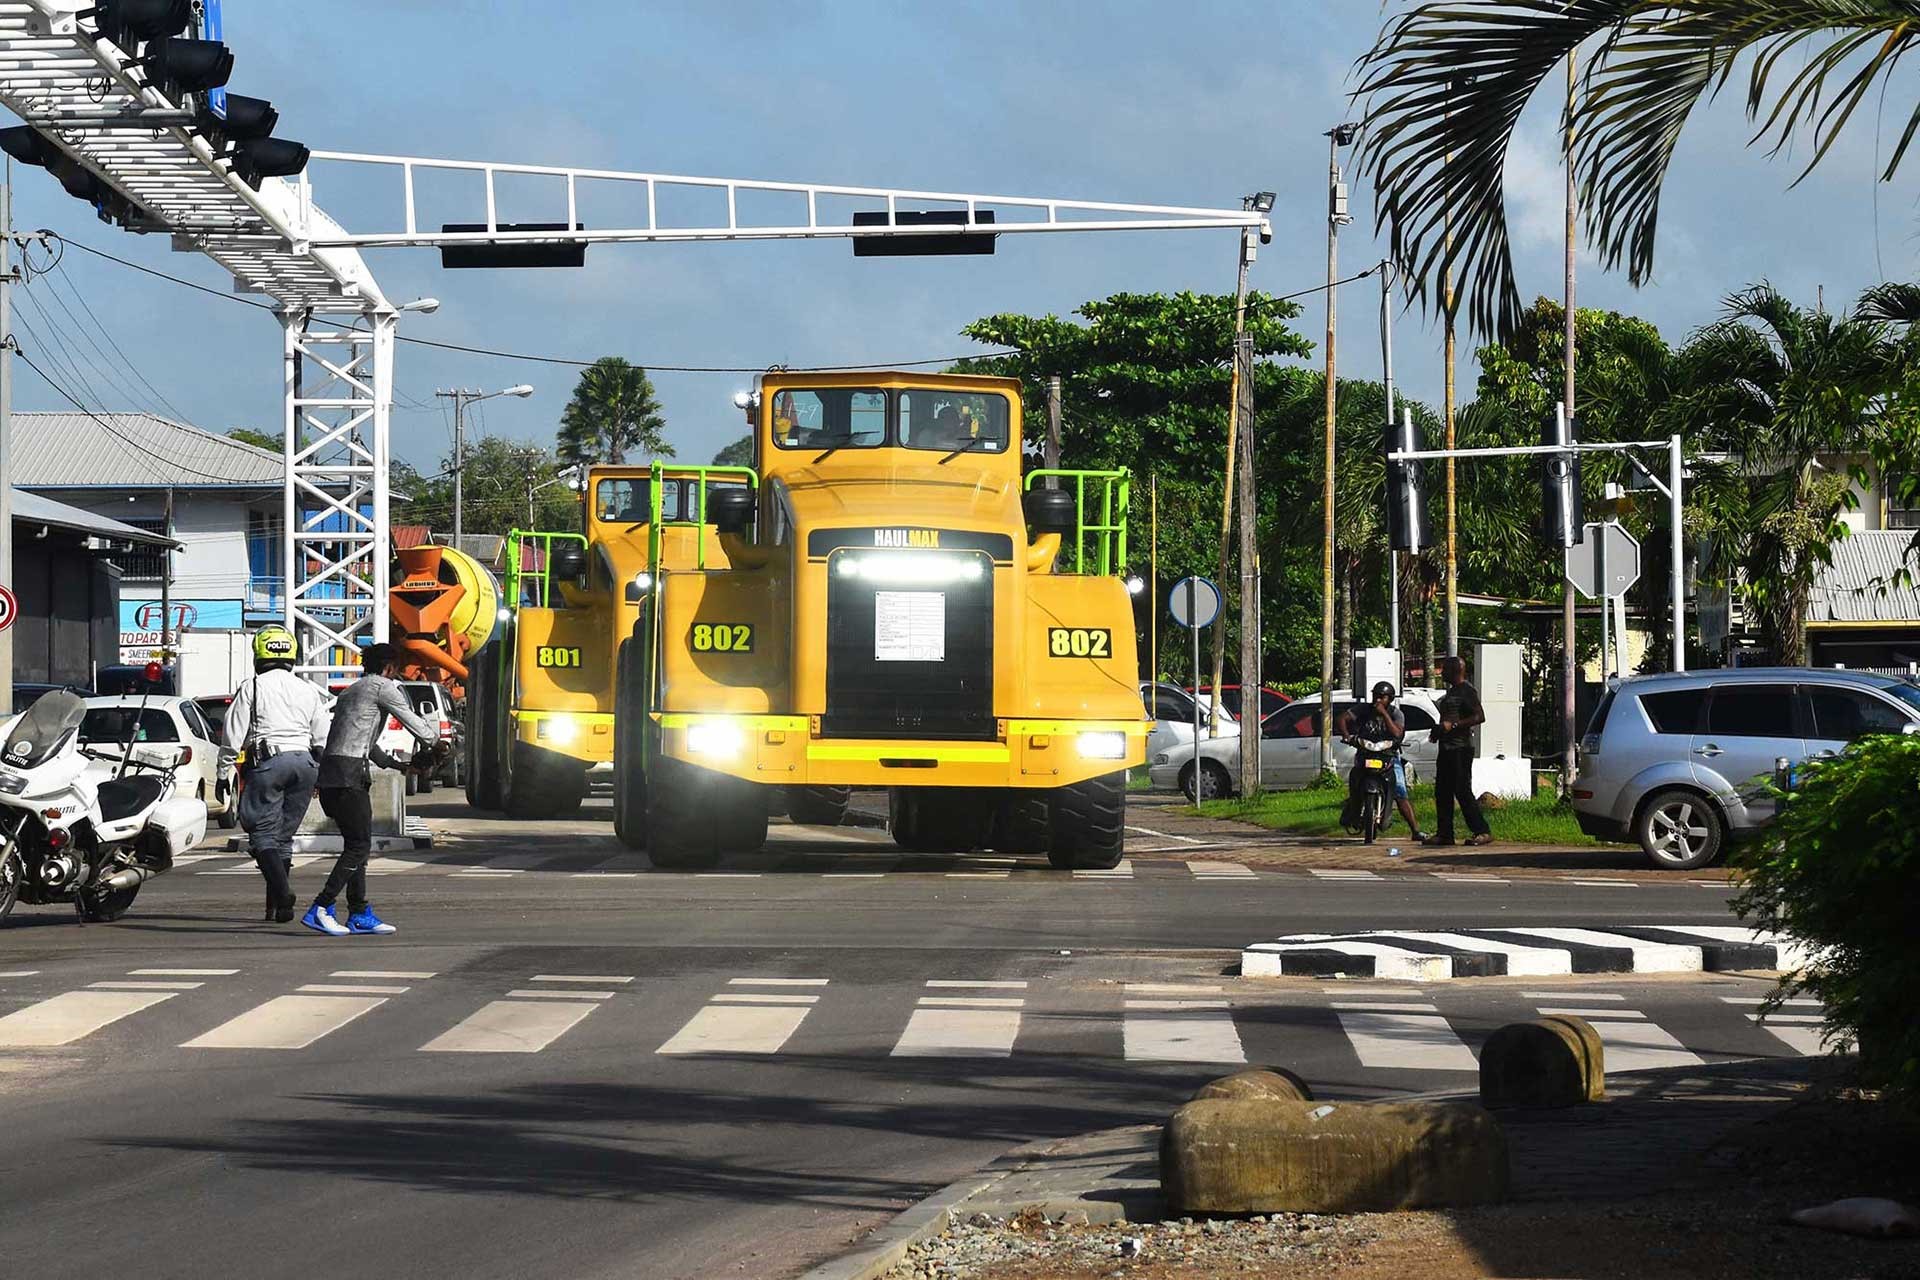 Elphinstone Haulmax Truck gearriveerd in Suriname